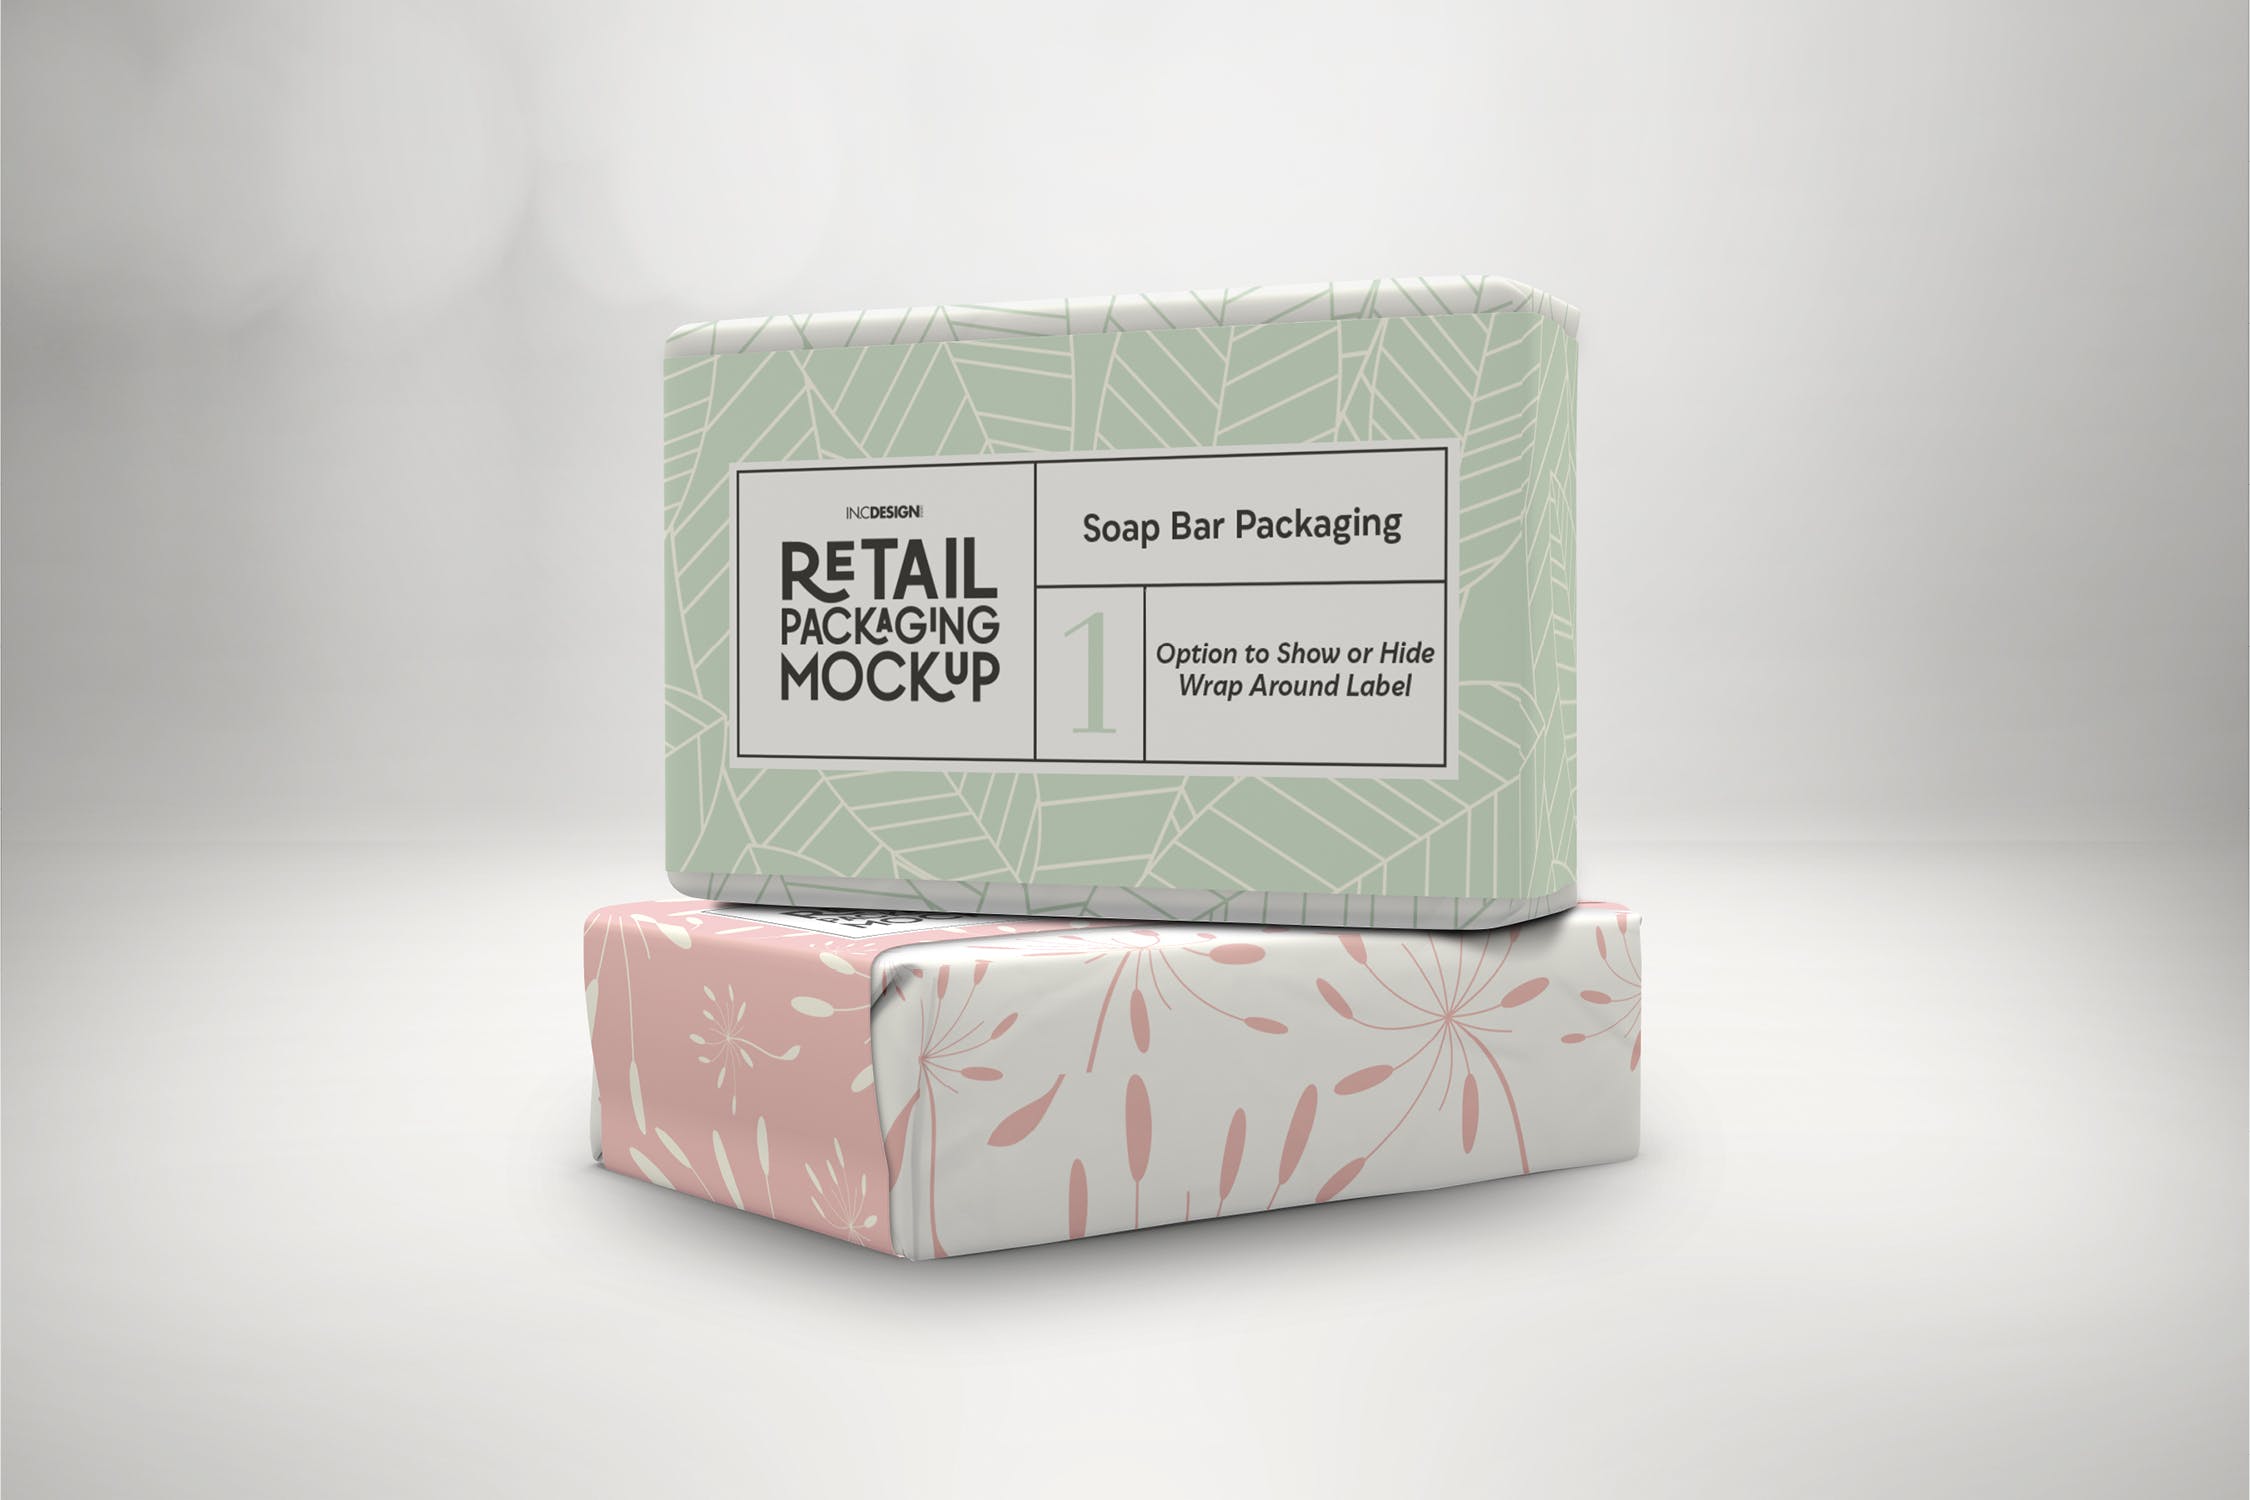 肥皂包装纸袋设计效果图非凡图库精选 Retail Soap Bar Packaging Mockup插图(1)